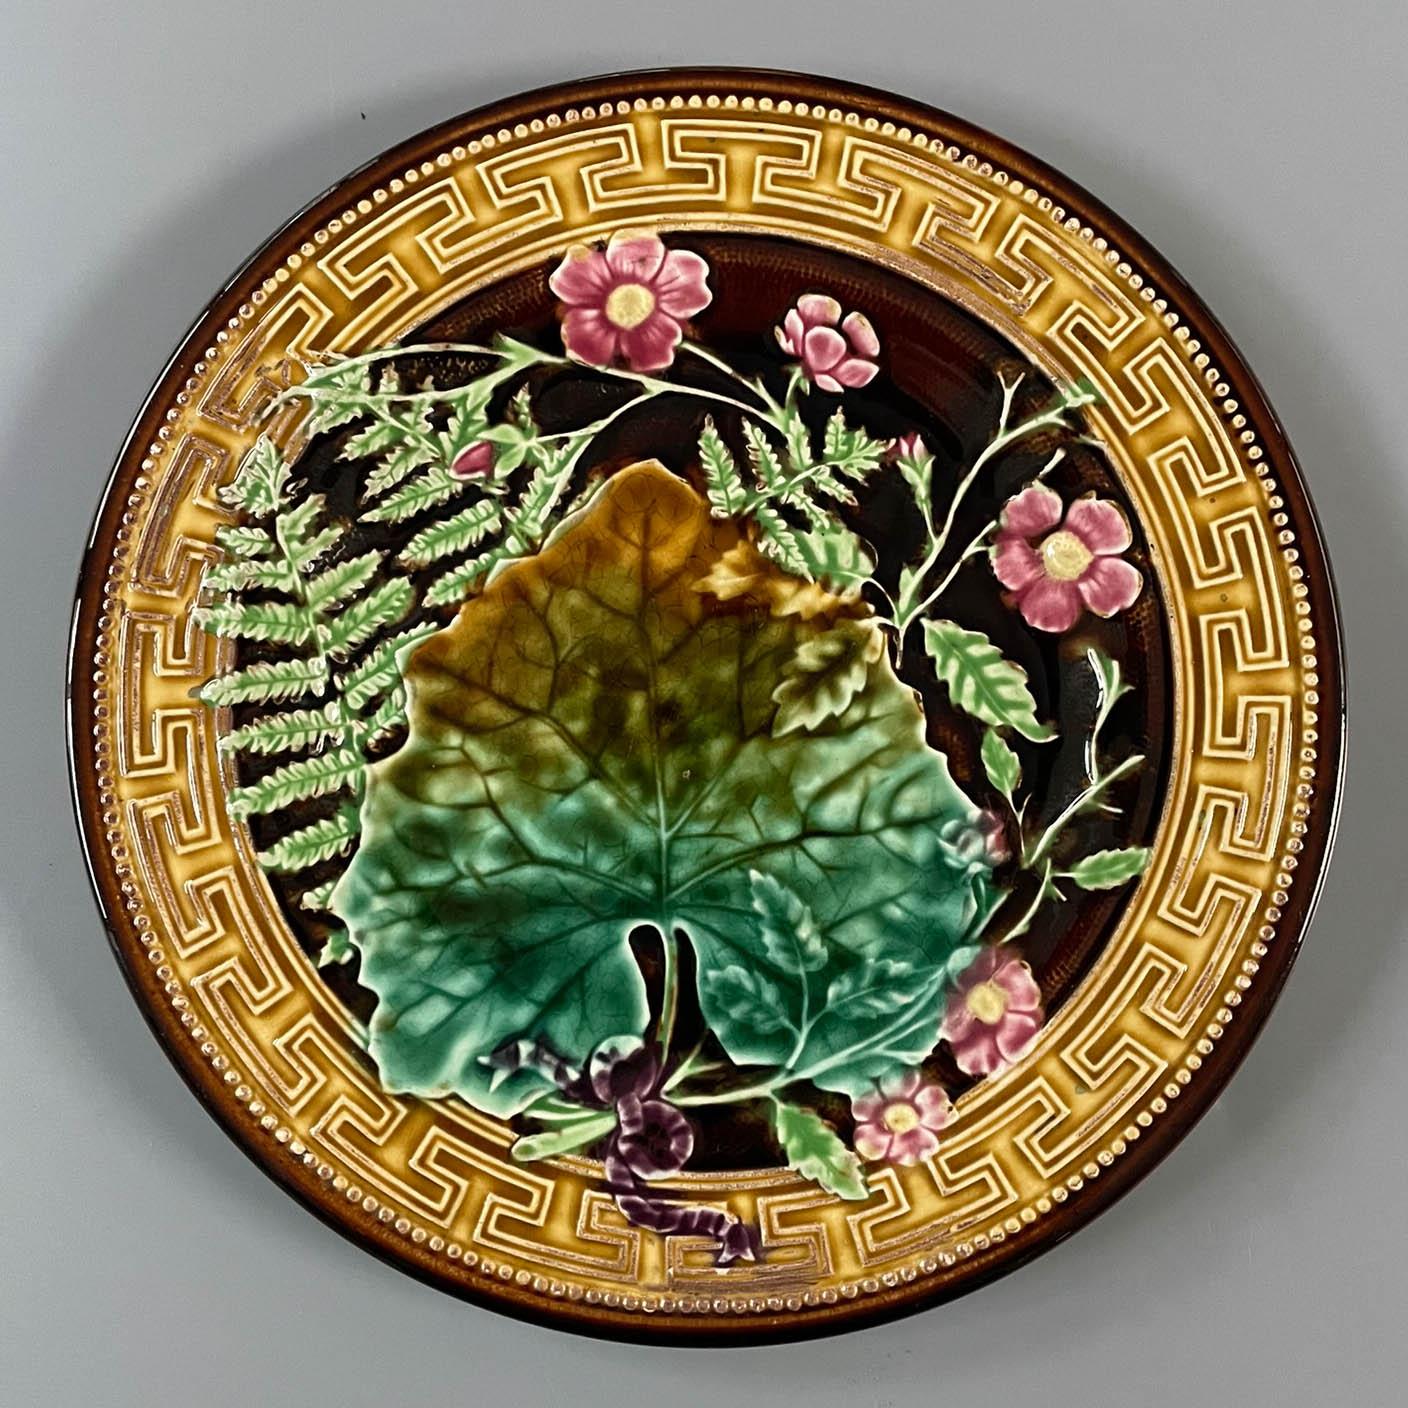 Assiette en céramique émaillée majolique française du XIXe siècle par H. B. Boulanger Choisy-le-Roi. Motif de fougères et de fleurs roses sous une grande feuille, noué avec un nœud violet. Nuances vives de vert, de jaune et de rose sur fond brun,